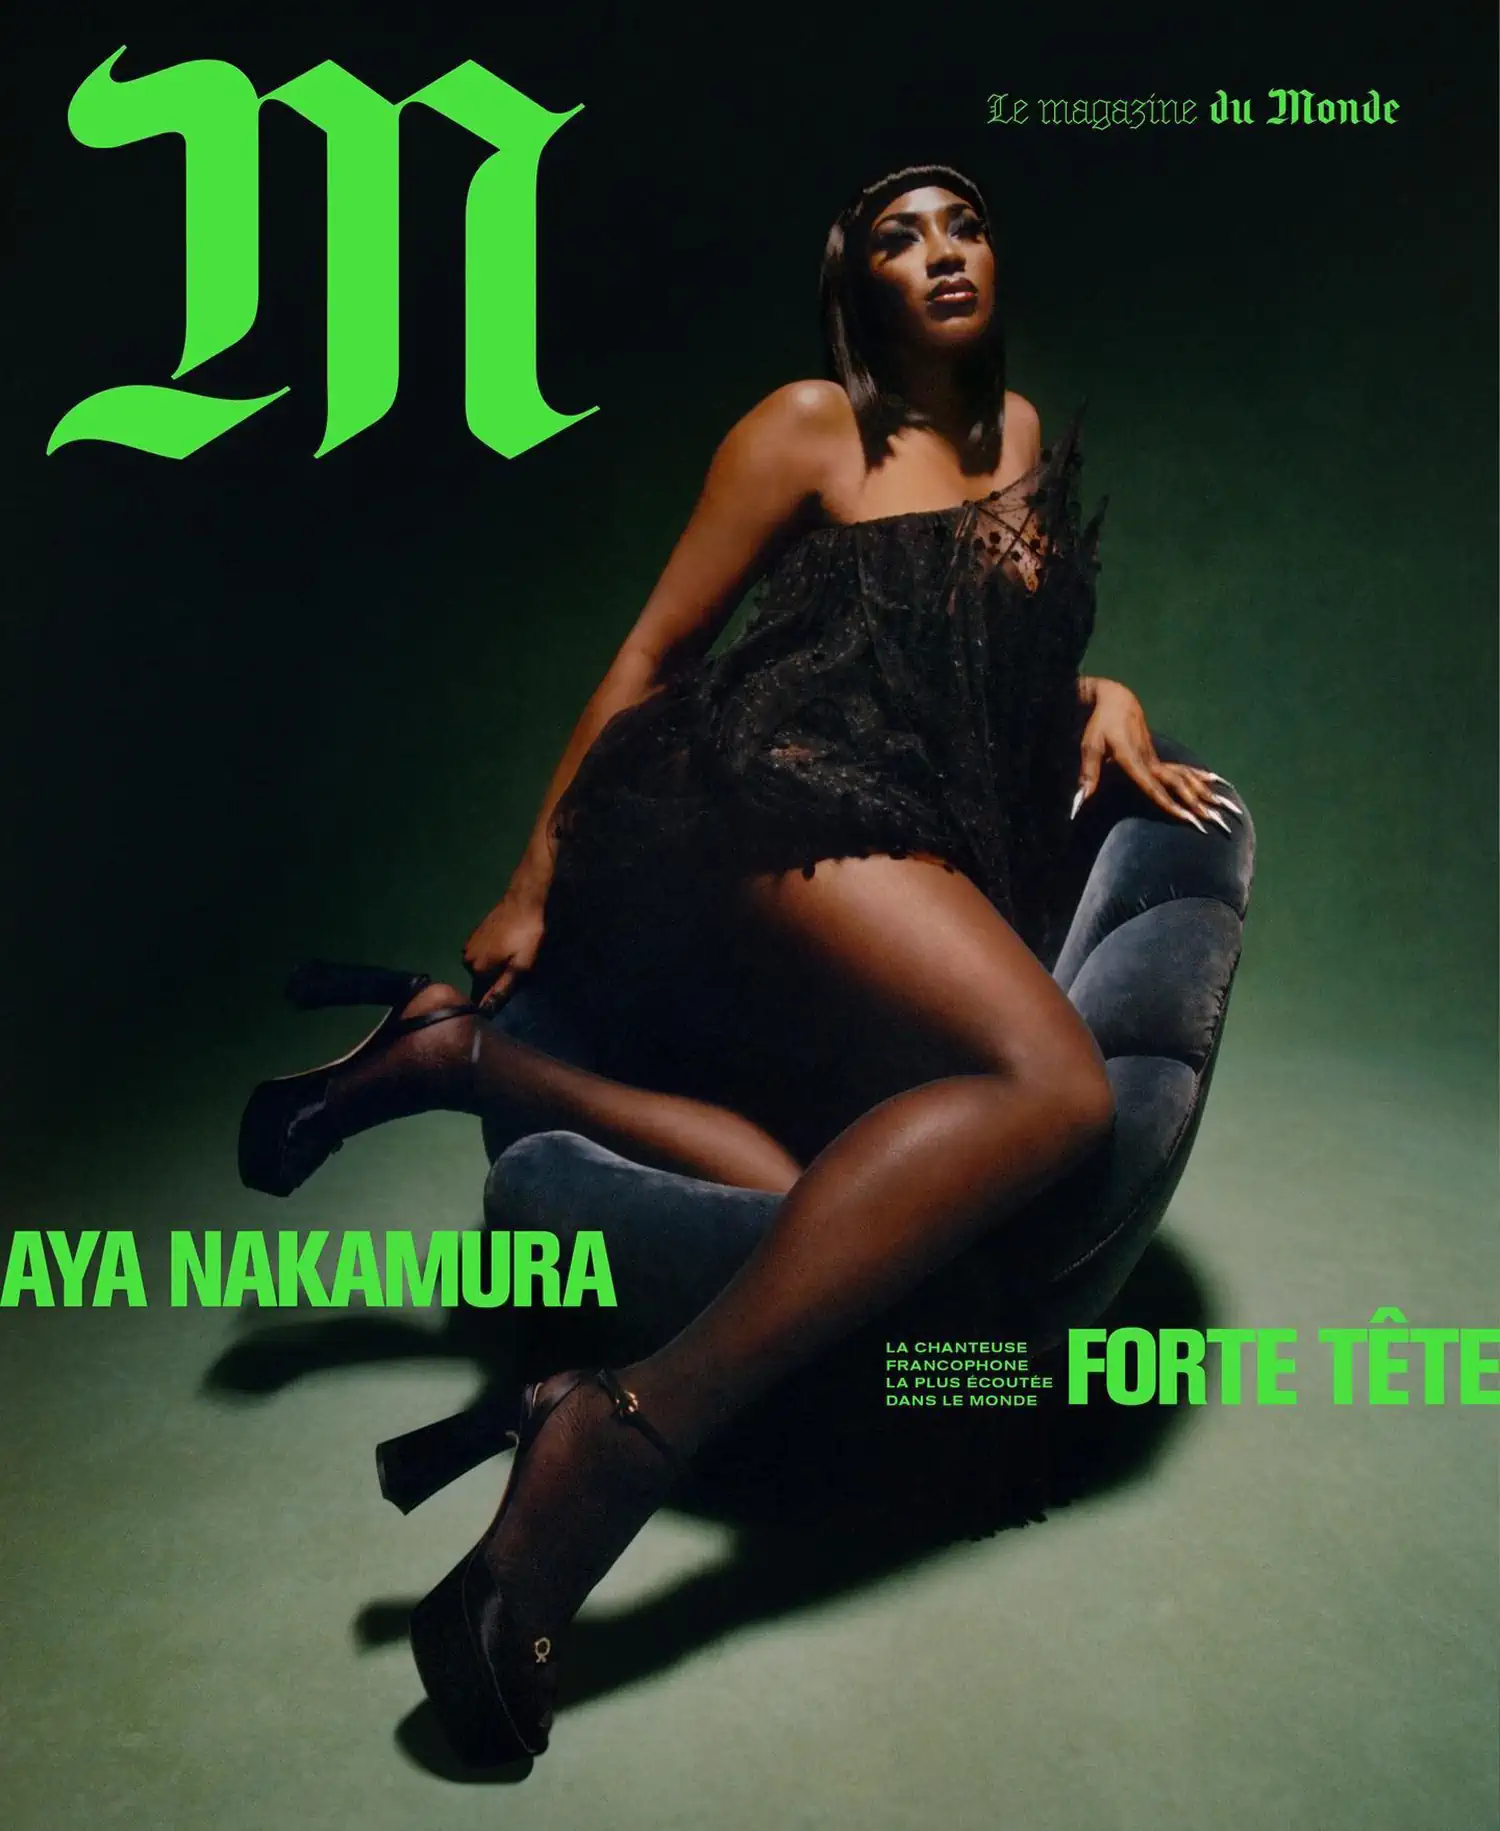 Aya Nakamura covers M Le magazine du Monde January 21st, 2023 by Joshua Woods